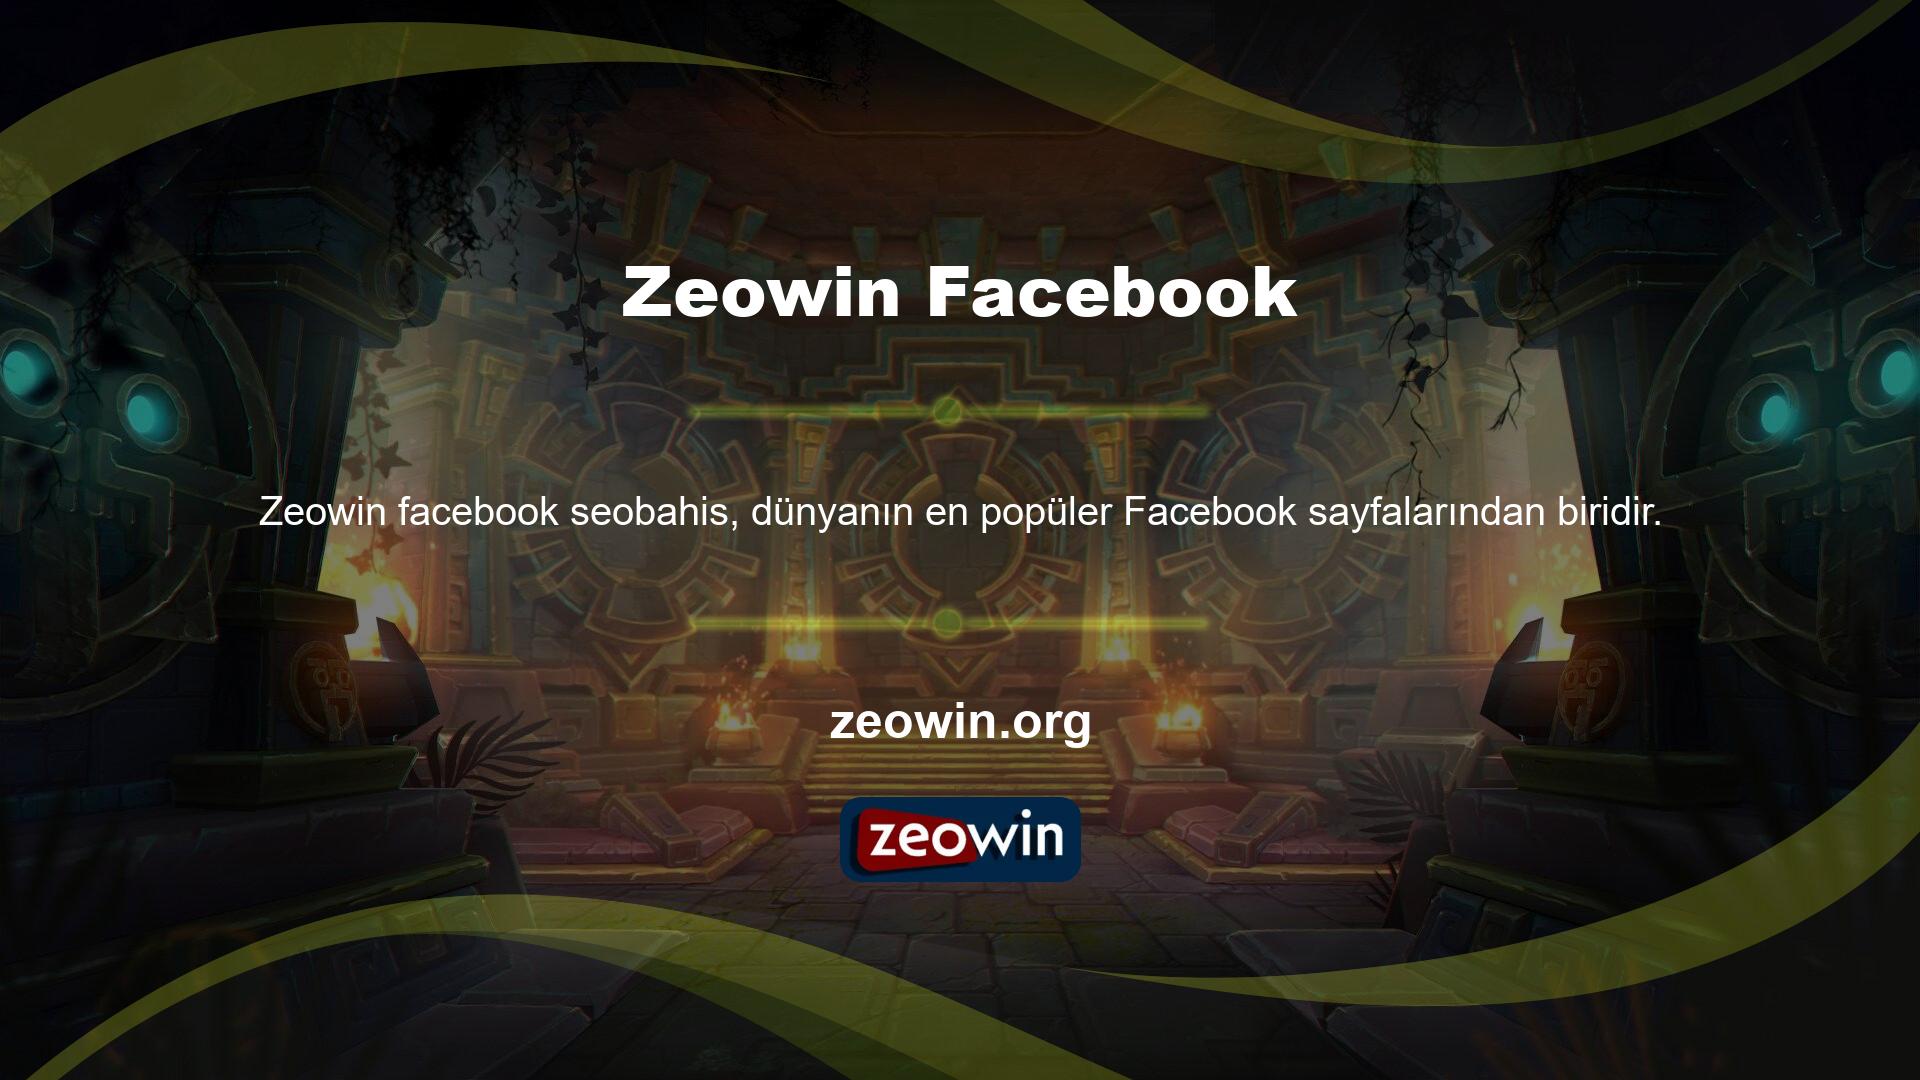 Zeowin Resmi ve Ticari Facebook Hesapları:

	Ayrıca Zeowin bahsettiğimiz Facebook hesabı dışında bir Facebook hesabı bulunmamaktadır